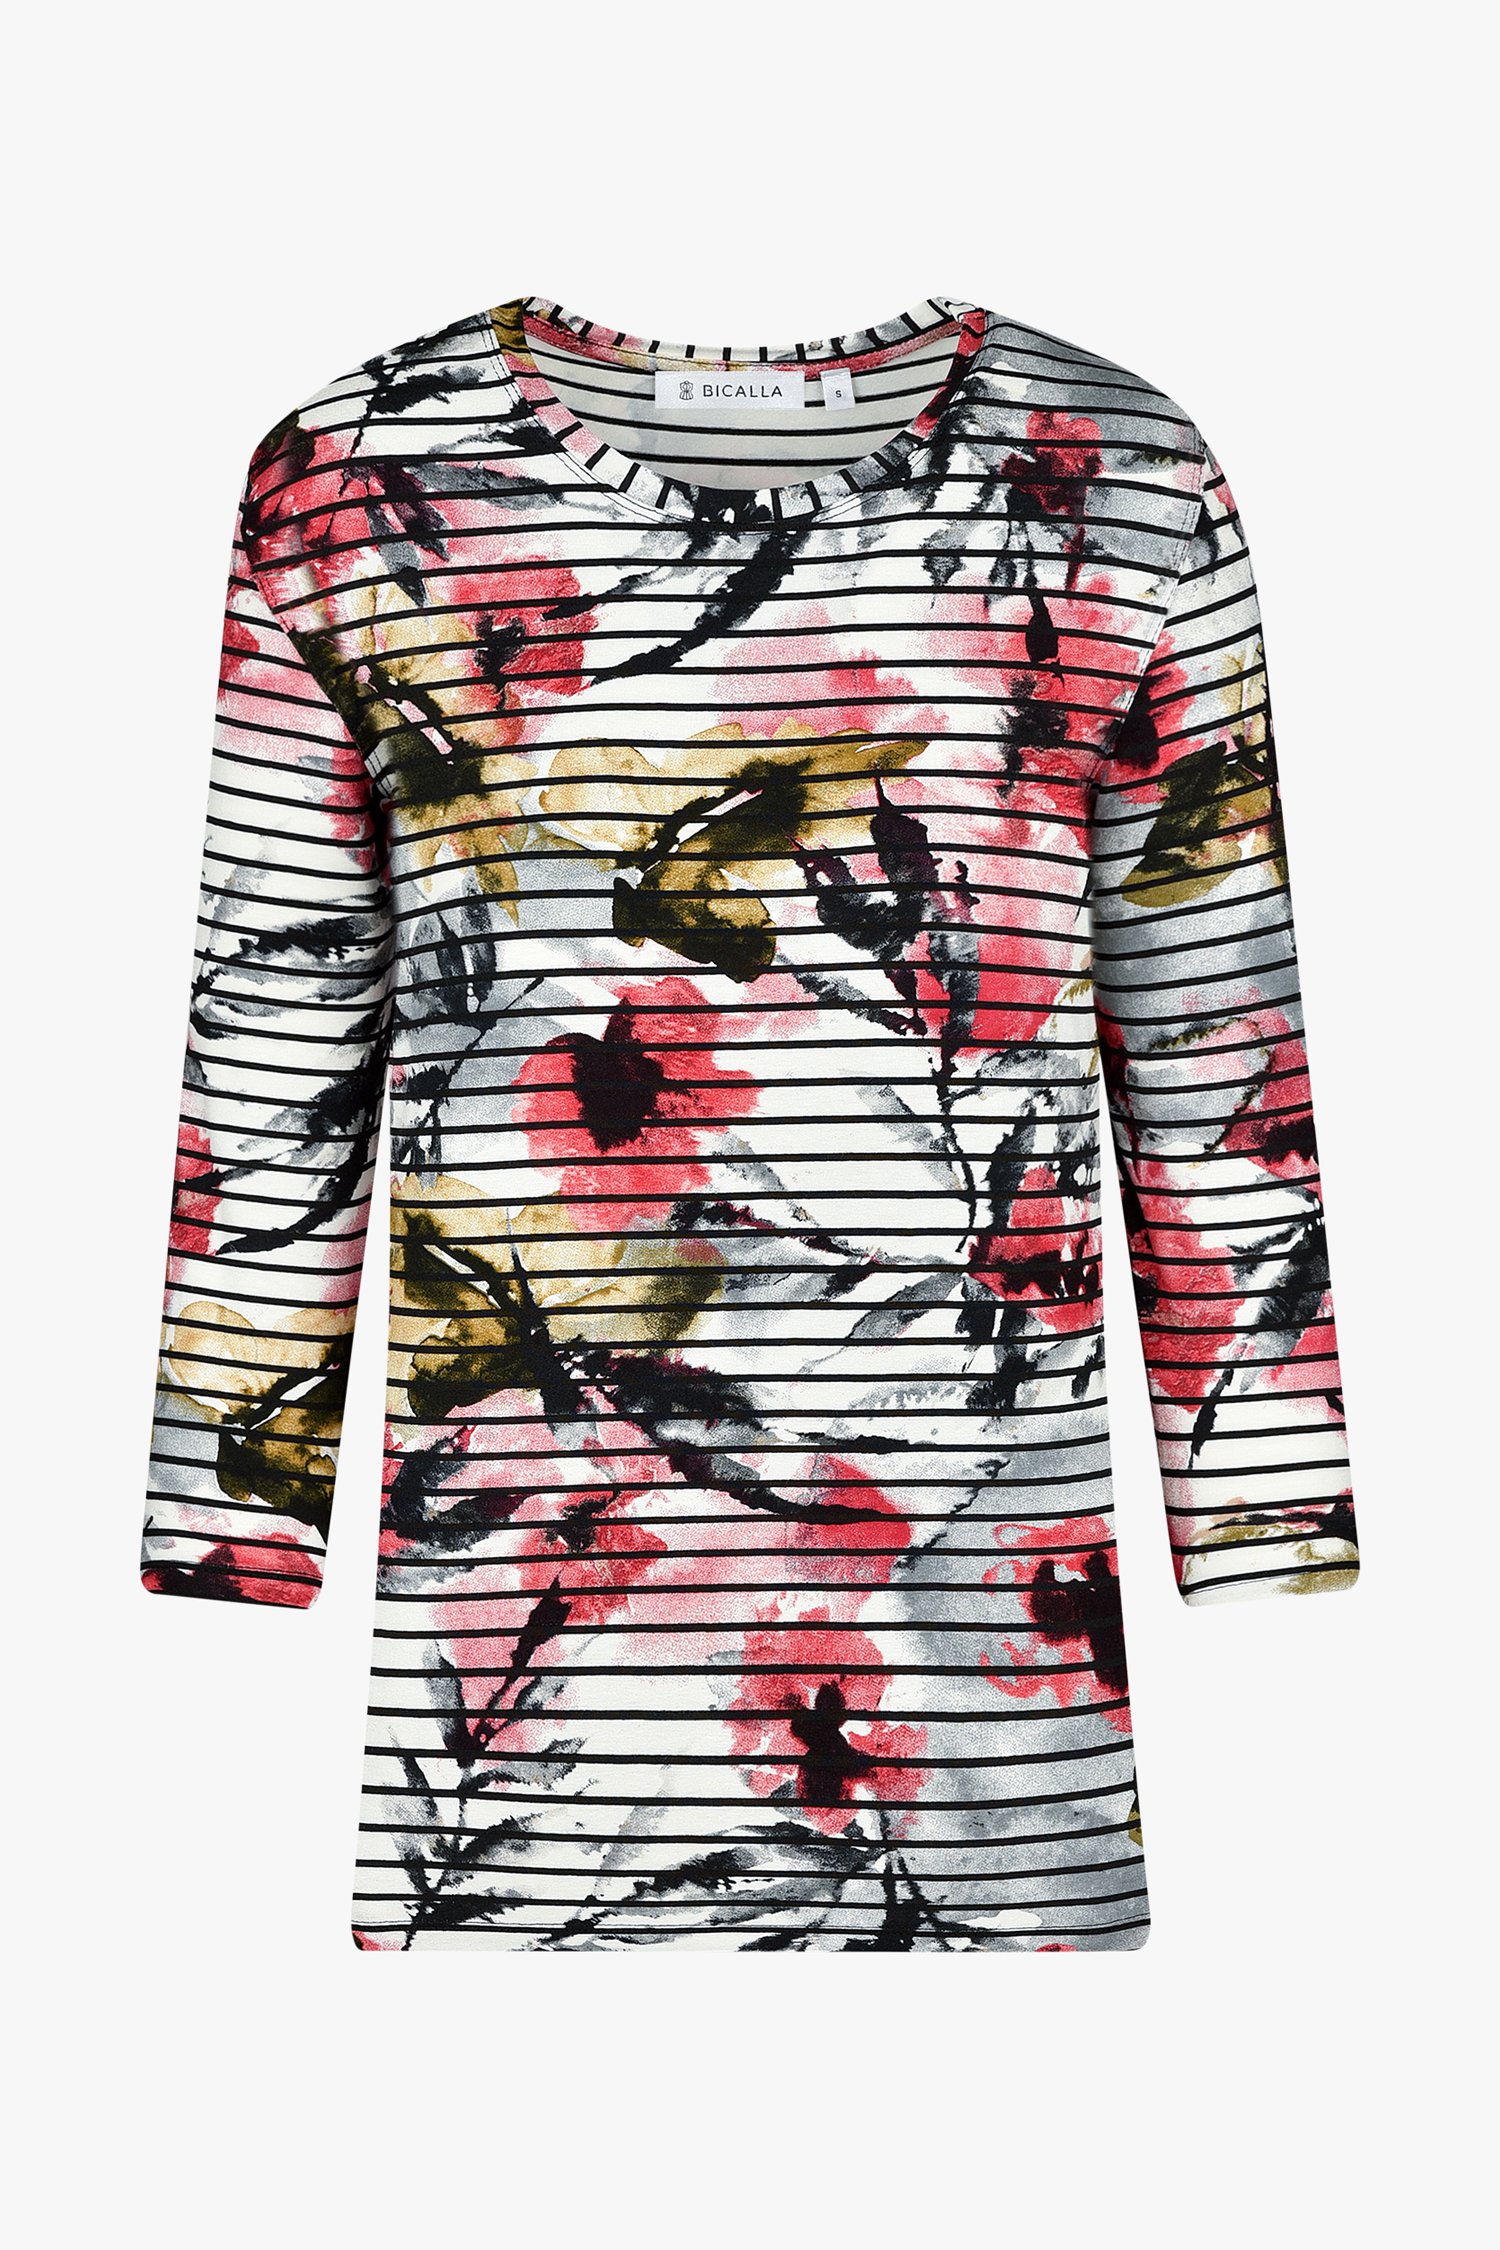 T-shirt avec rayures et motif floral de Bicalla pour Femmes